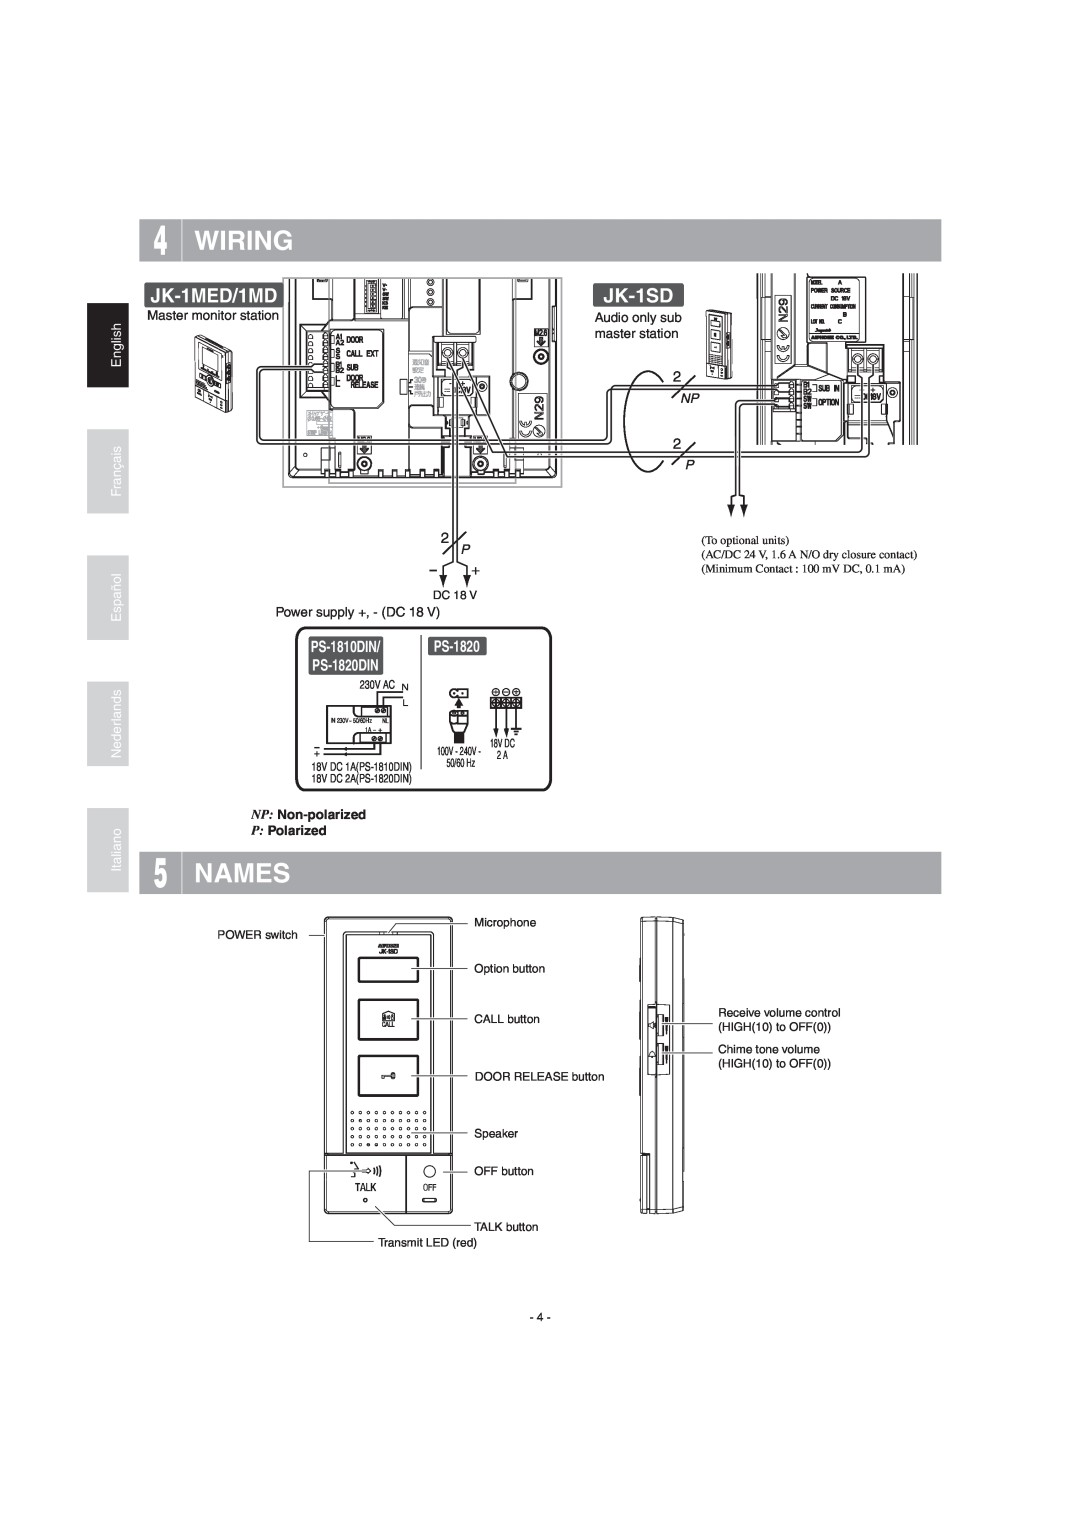 Aiphone JK-1SD Wiring, Names, English Français Español Nederlands Italiano, Master monitor station, Power supply +, - DC 